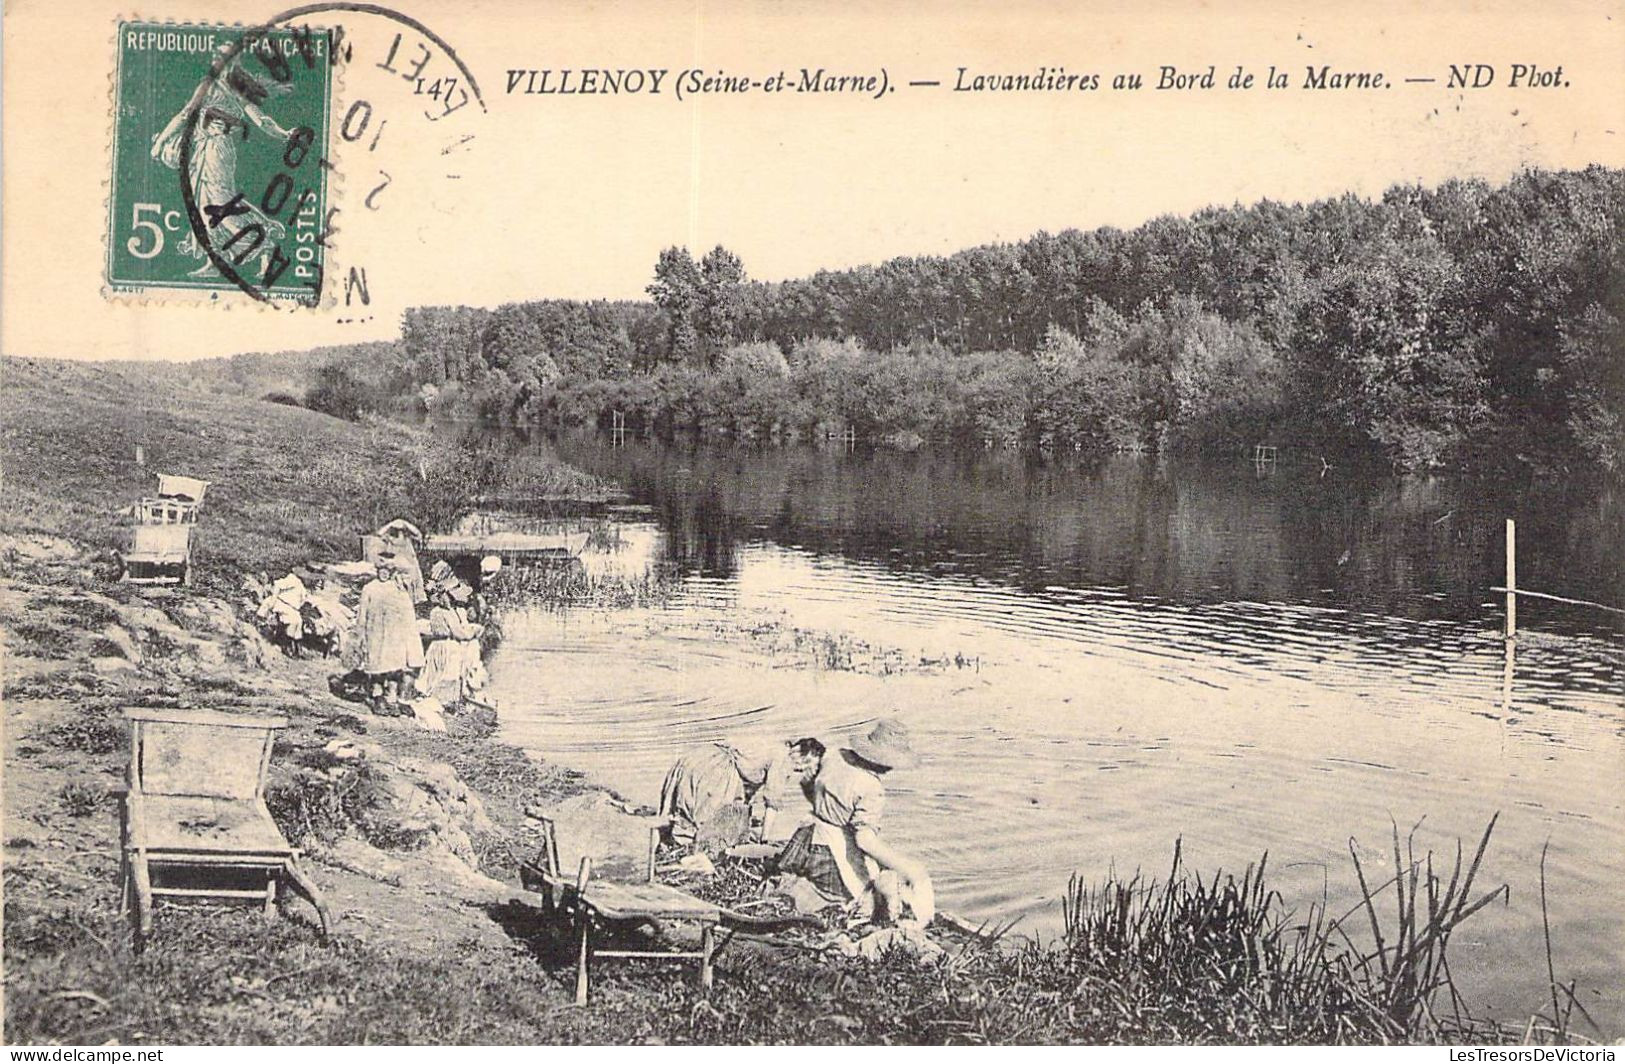 FRANCE - 77 - VILLENOY - Lavandières au Bord de la Marne - Carte Postale Ancienne